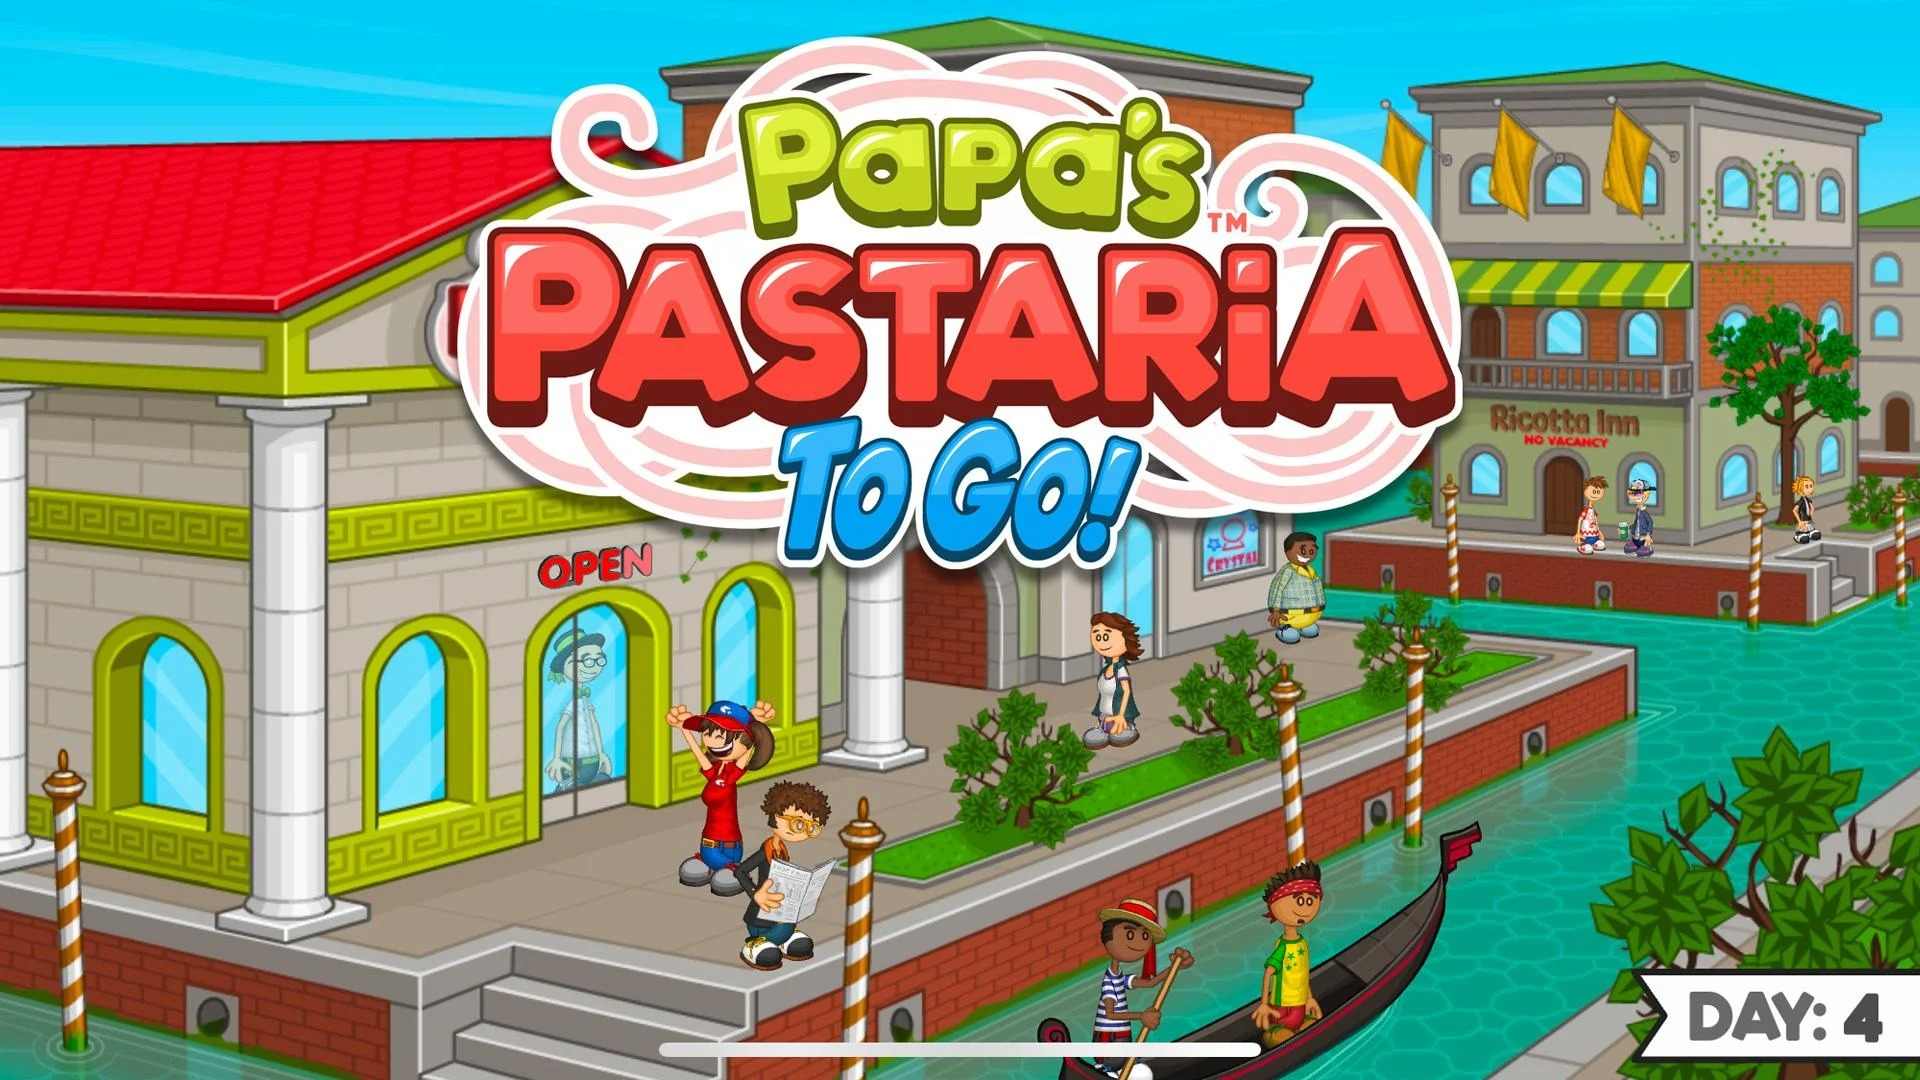 老爹意大利面店 (Papa's Pastaria To Go!)游戏截图-1